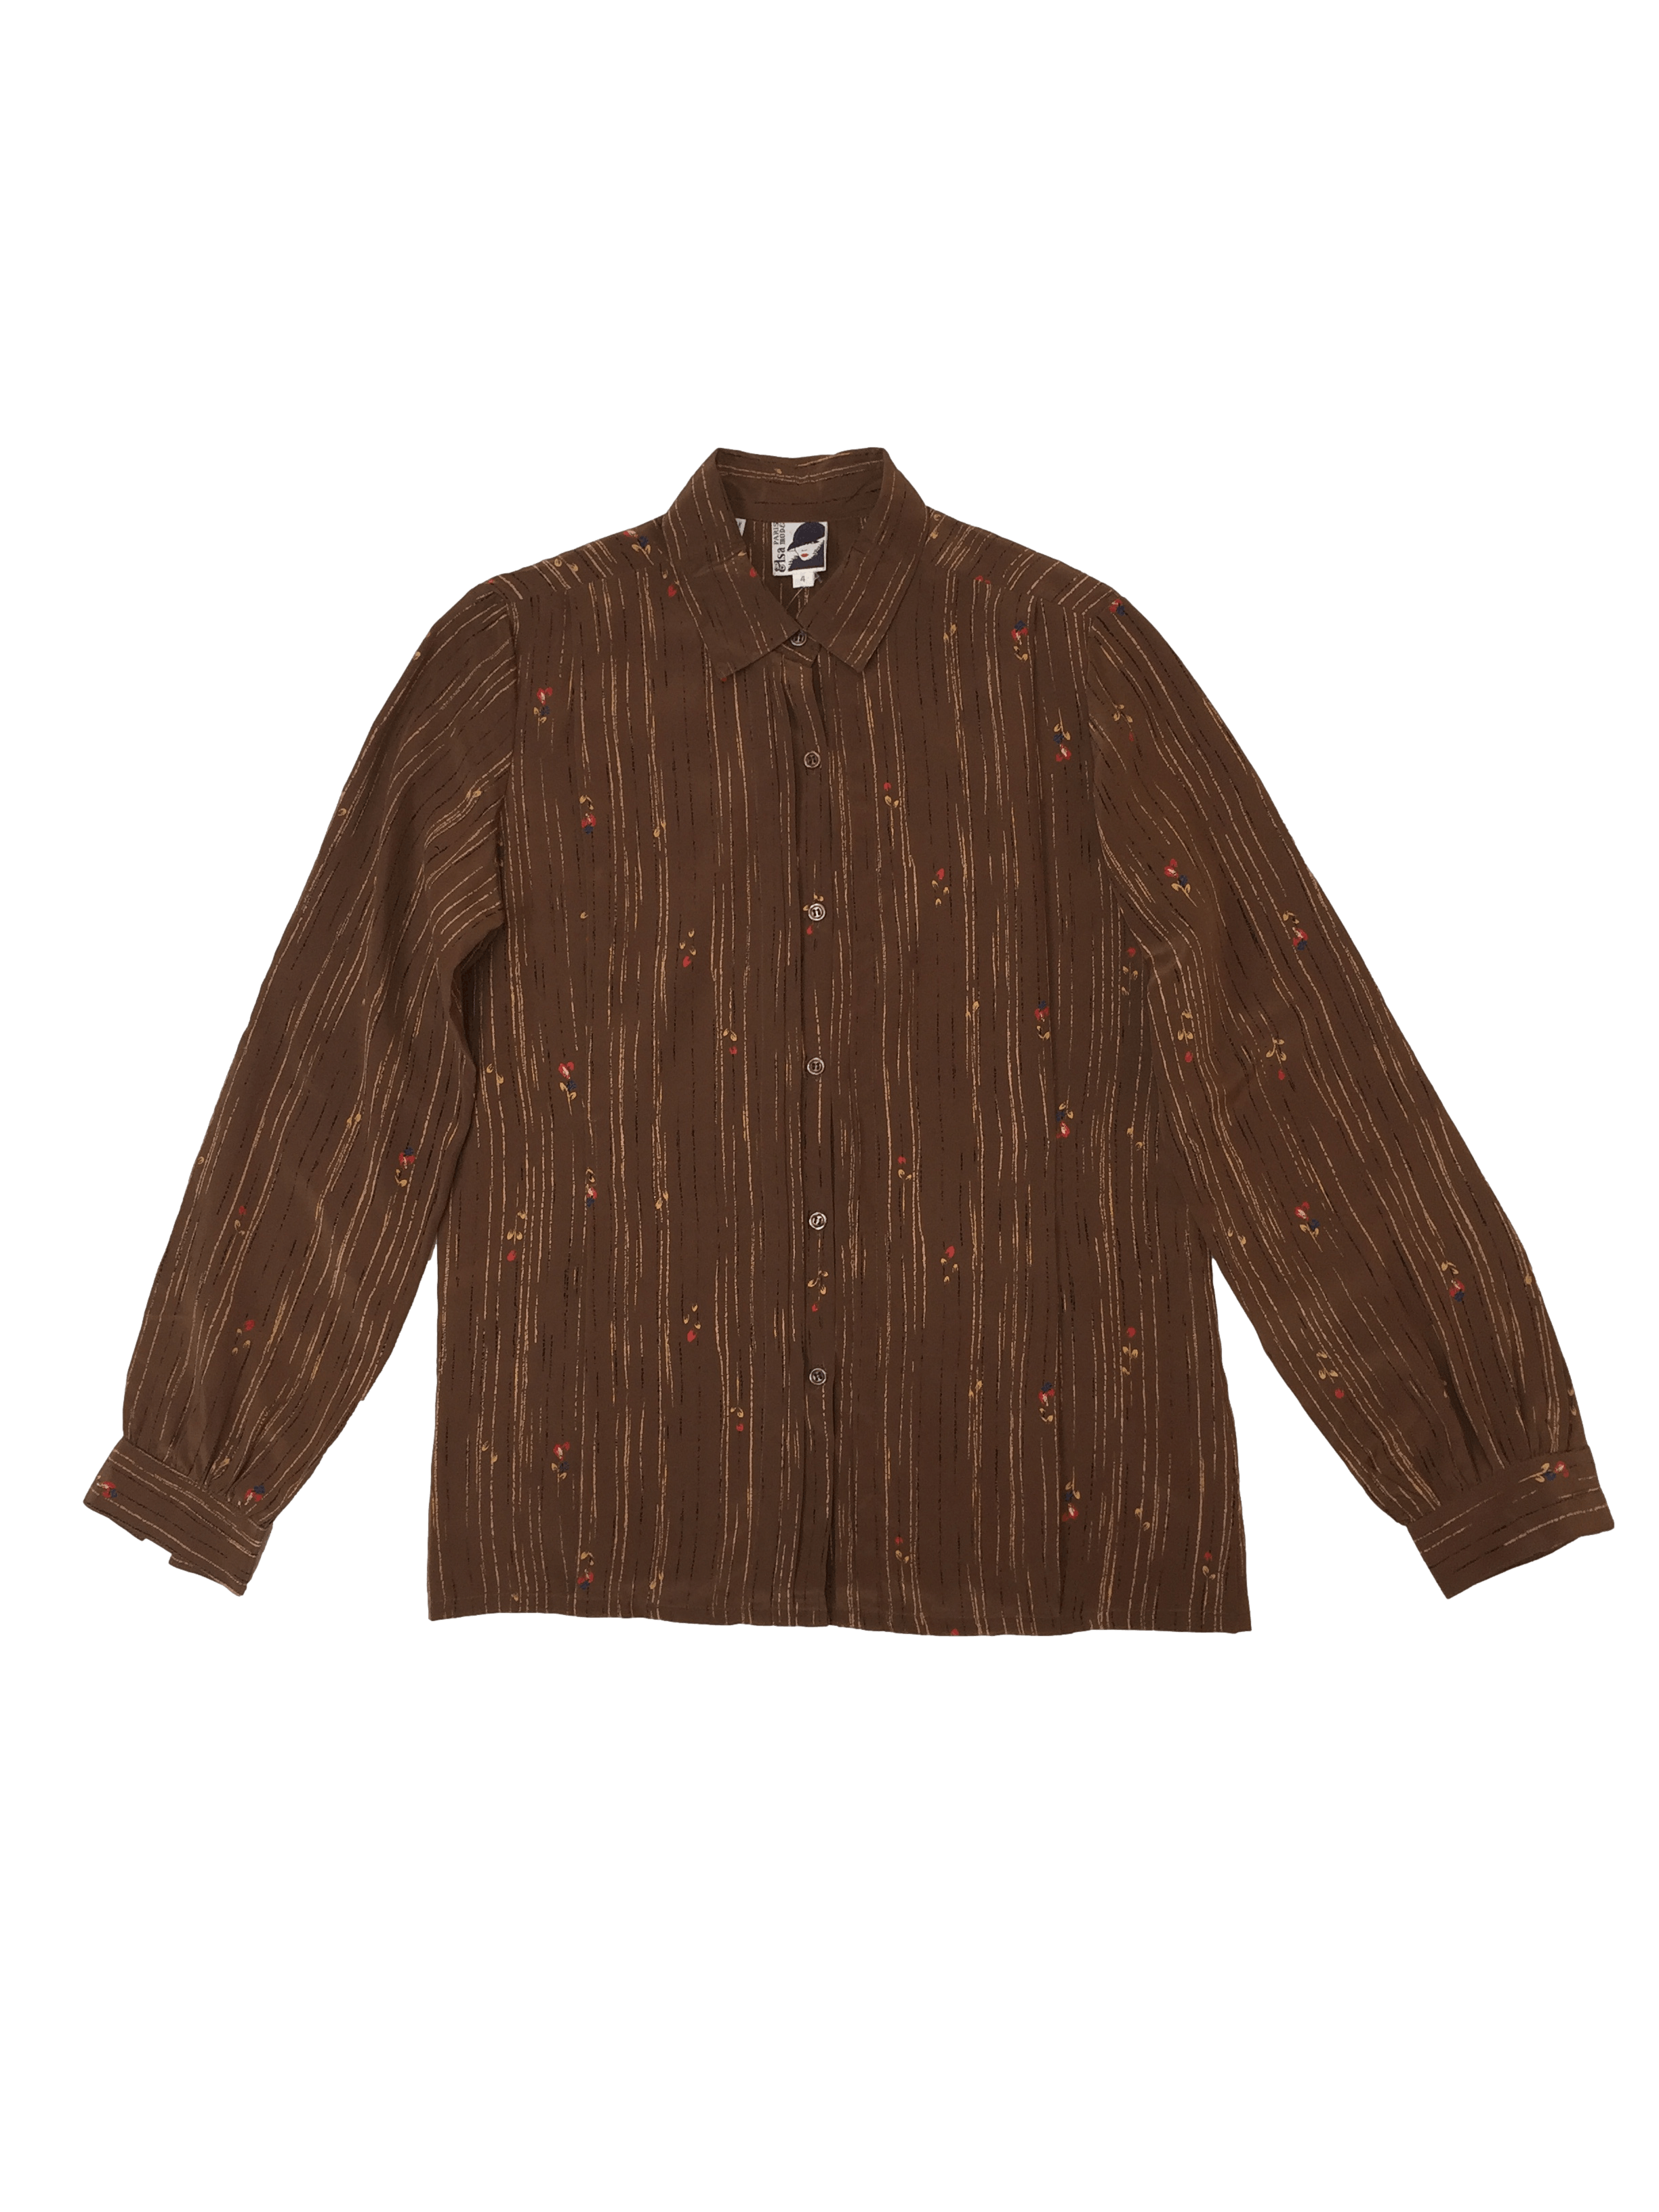 Blusa vintage 100% seda marrón con florcitas